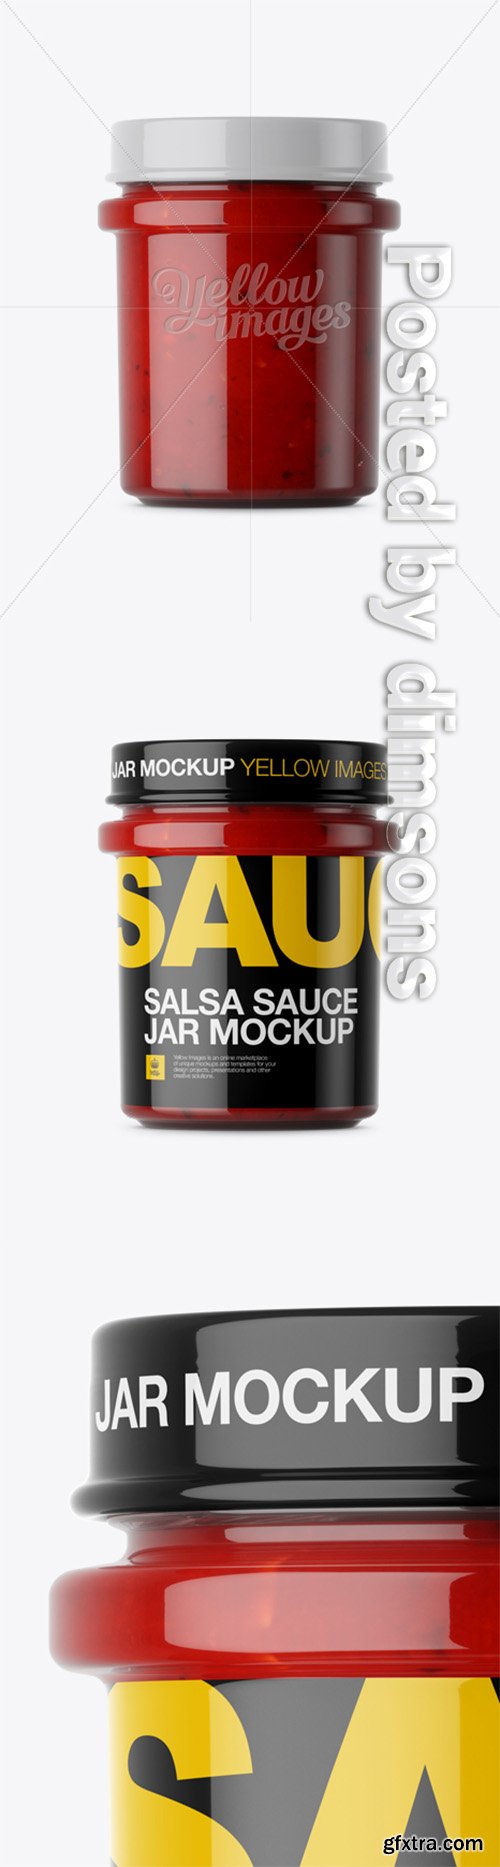 Glass Jar With Salsa Sauce Mockup - Eye-Level Shot 14413